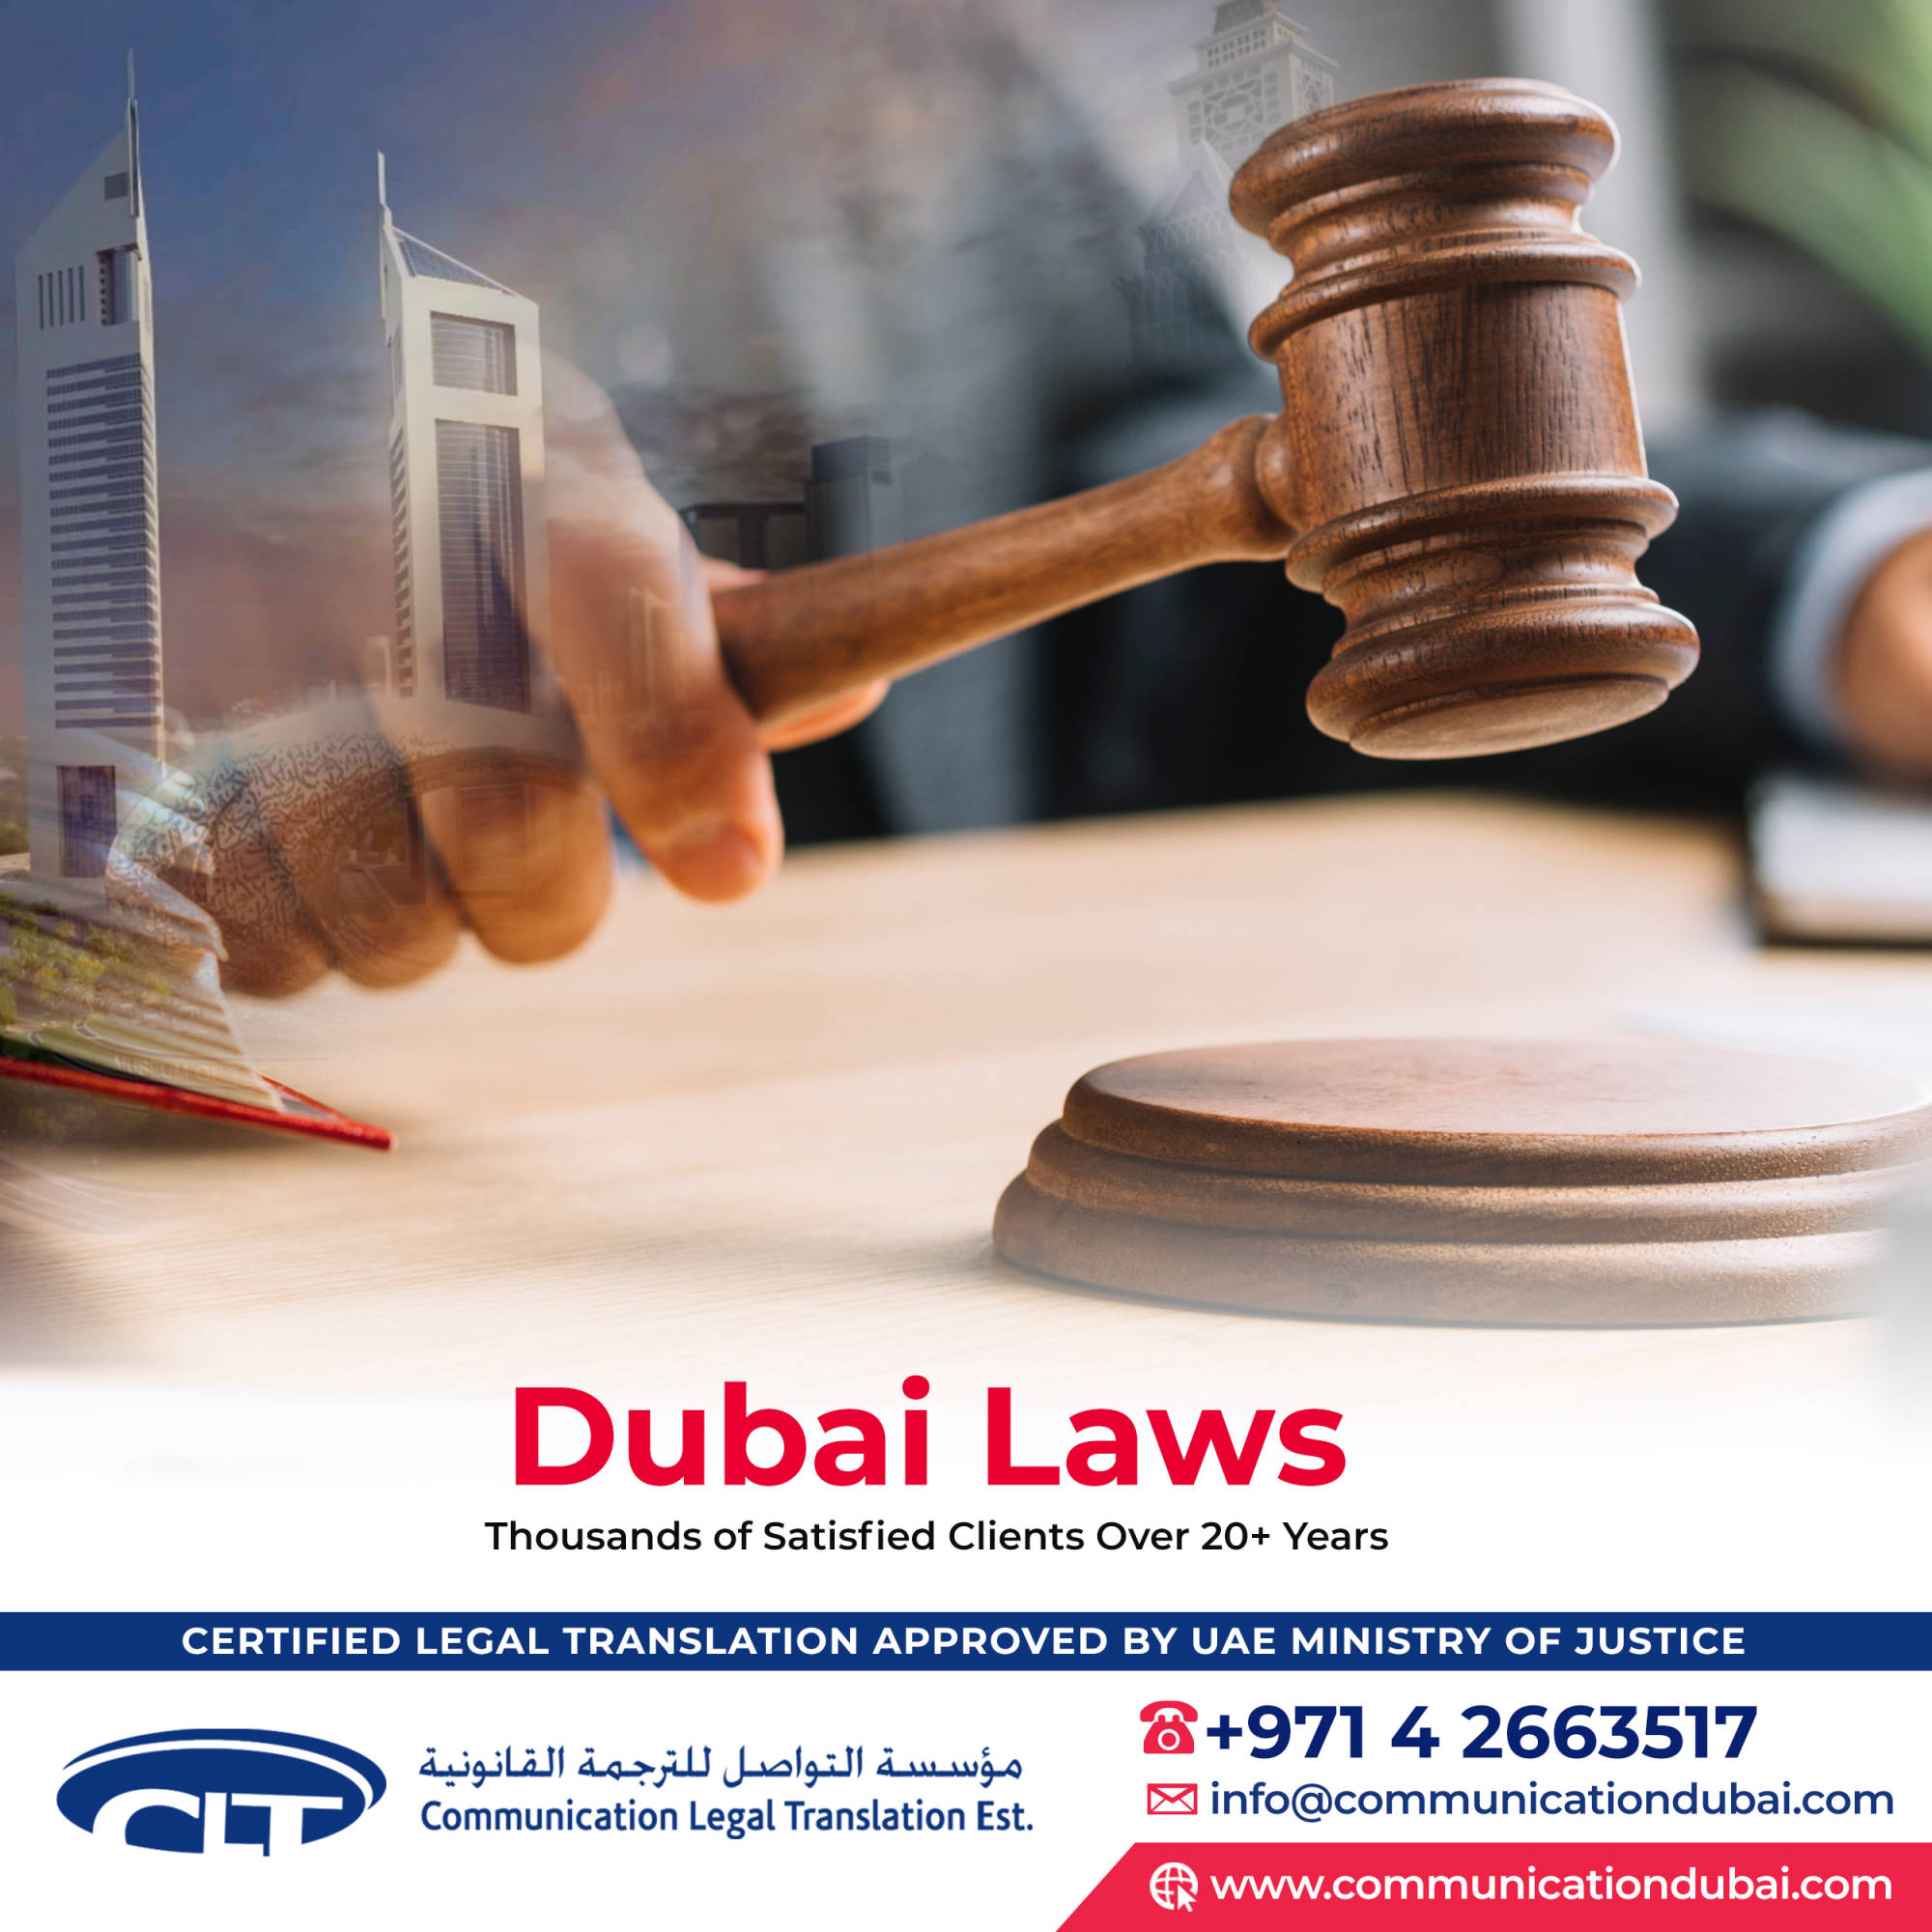 Dubai, Administrative Resolution No. (643)  of  2020  